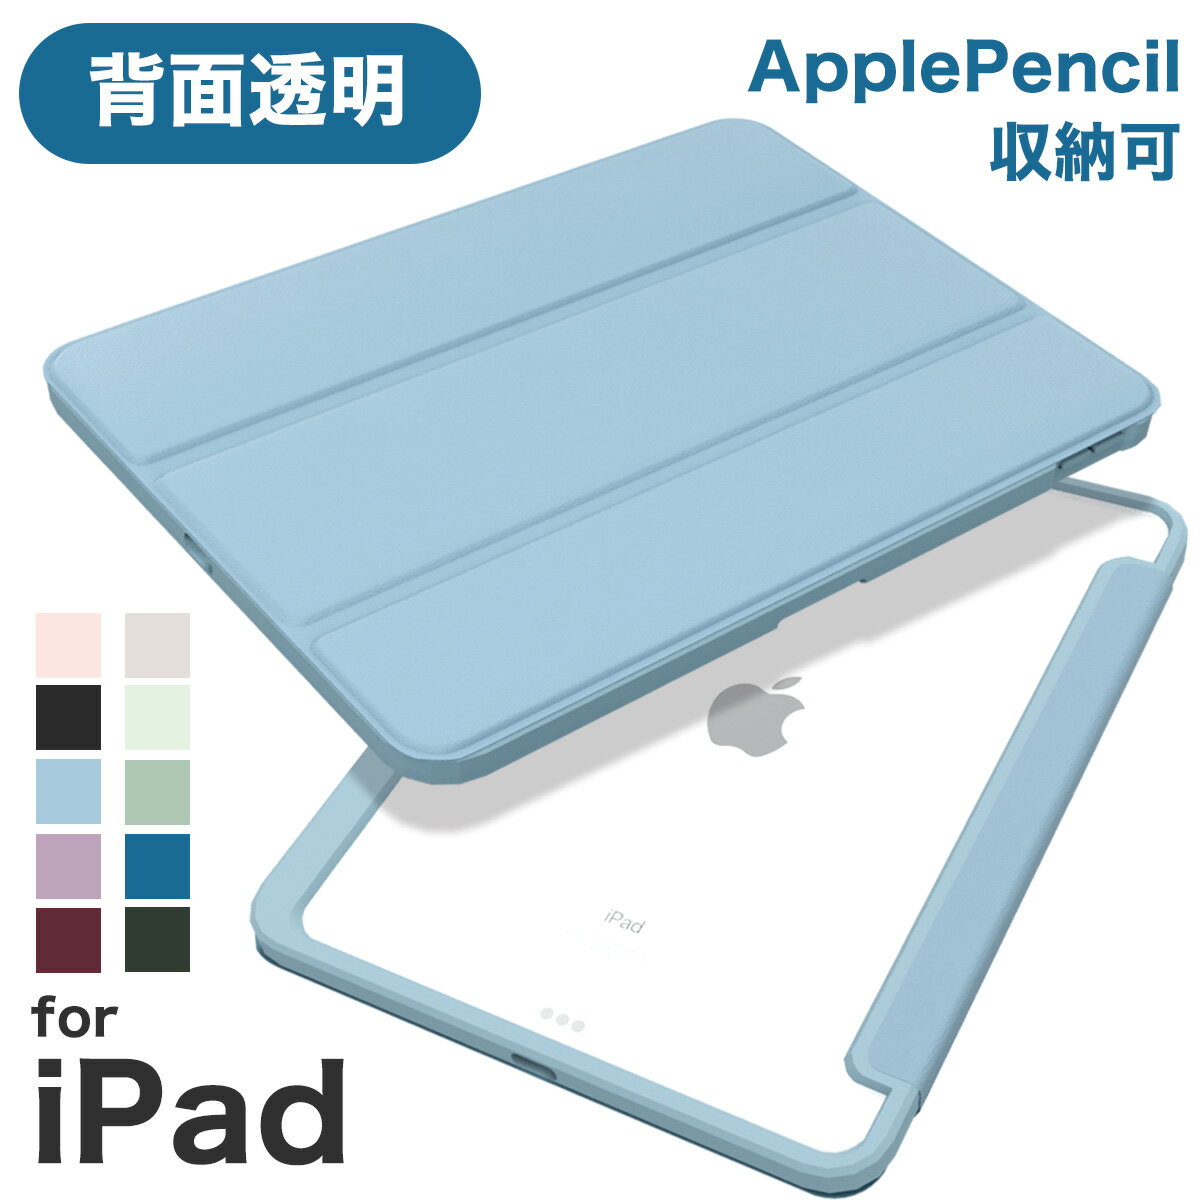 iPad Air 第5世代ケースApple Pencil収納OKのおすすめカバー